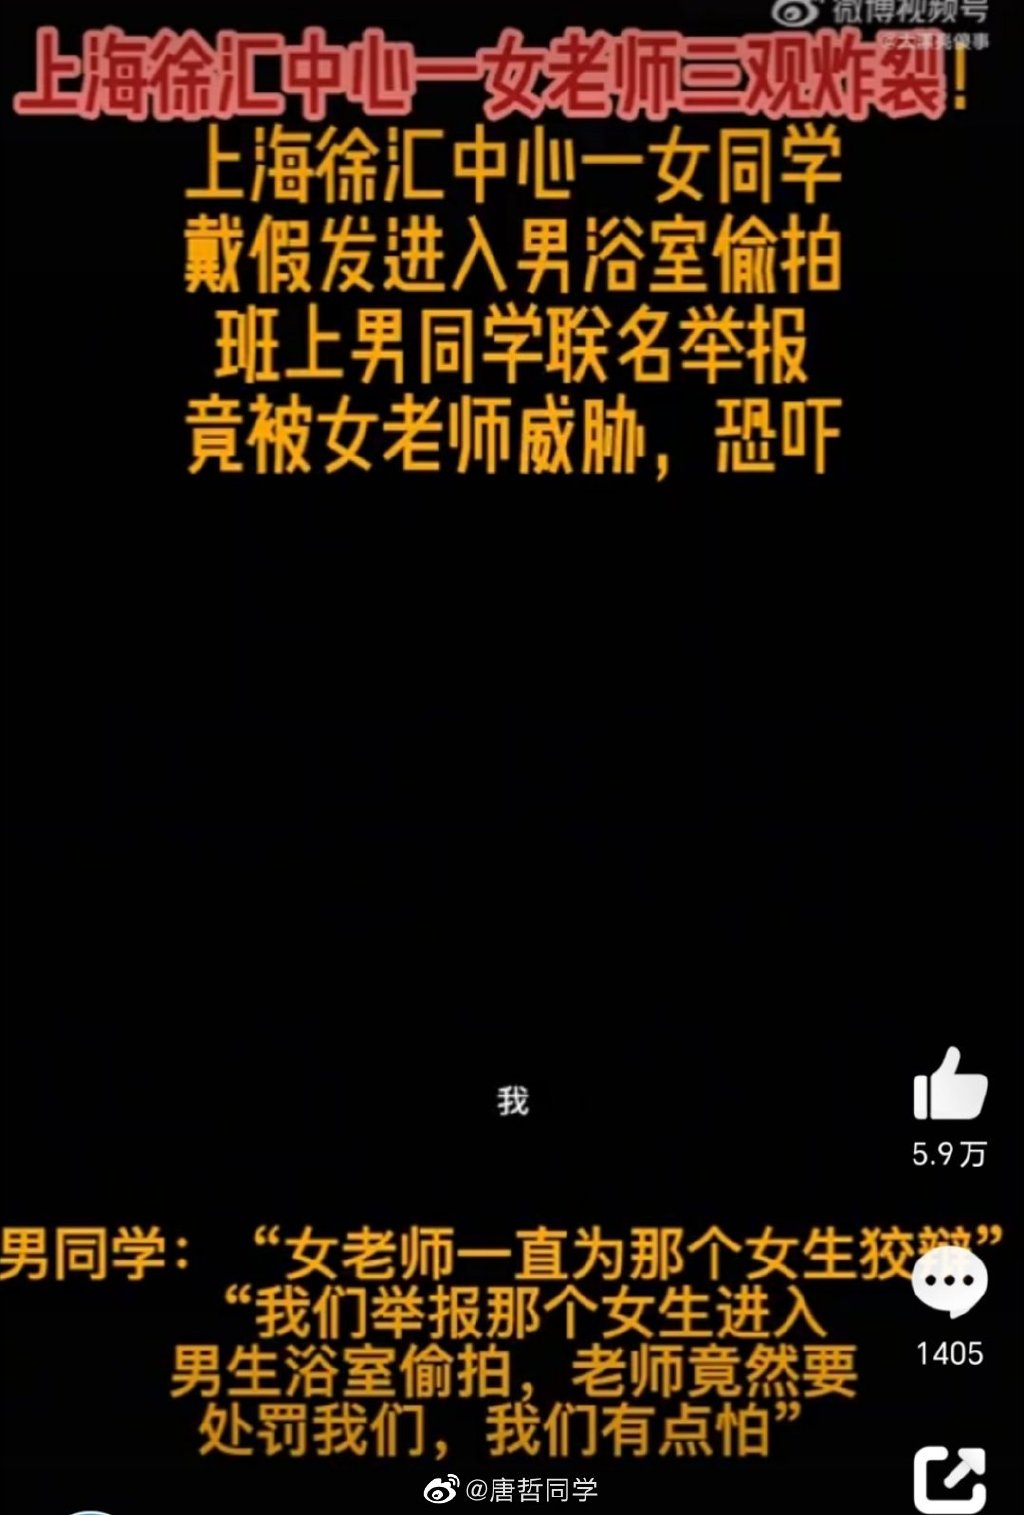 上海徐汇中学一女生戴假发进男浴室偷拍 老师阻止上告奇葩逻辑令人咋舌